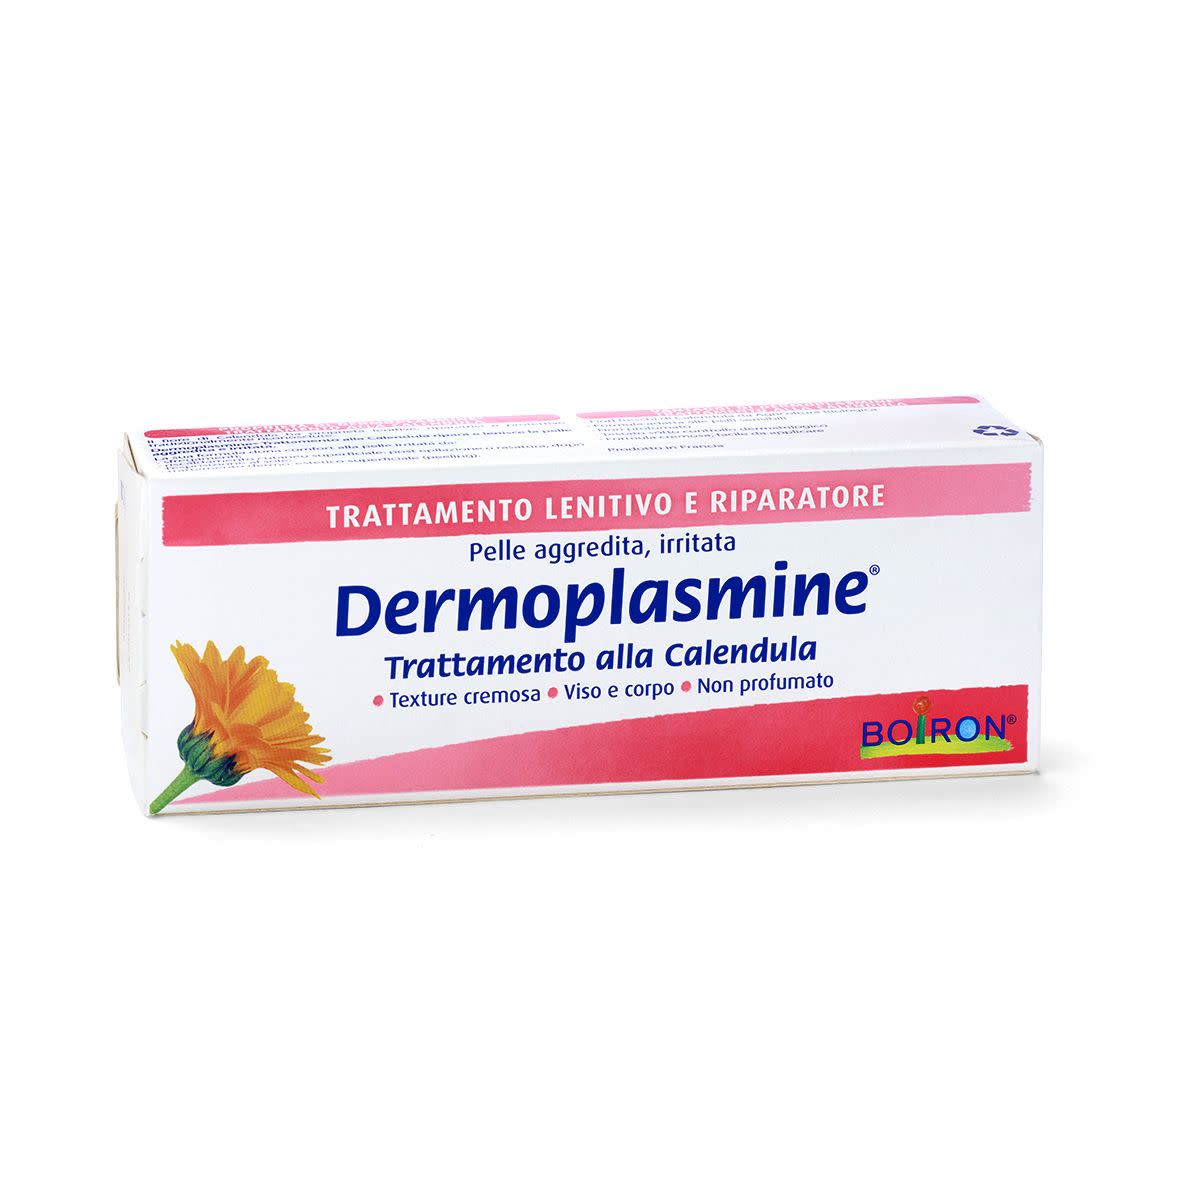 980287155 - Boiron Dermoplasmine Trattamento alla Calendula crema riparatrice e protettrice 70g - 4709030_2.jpg